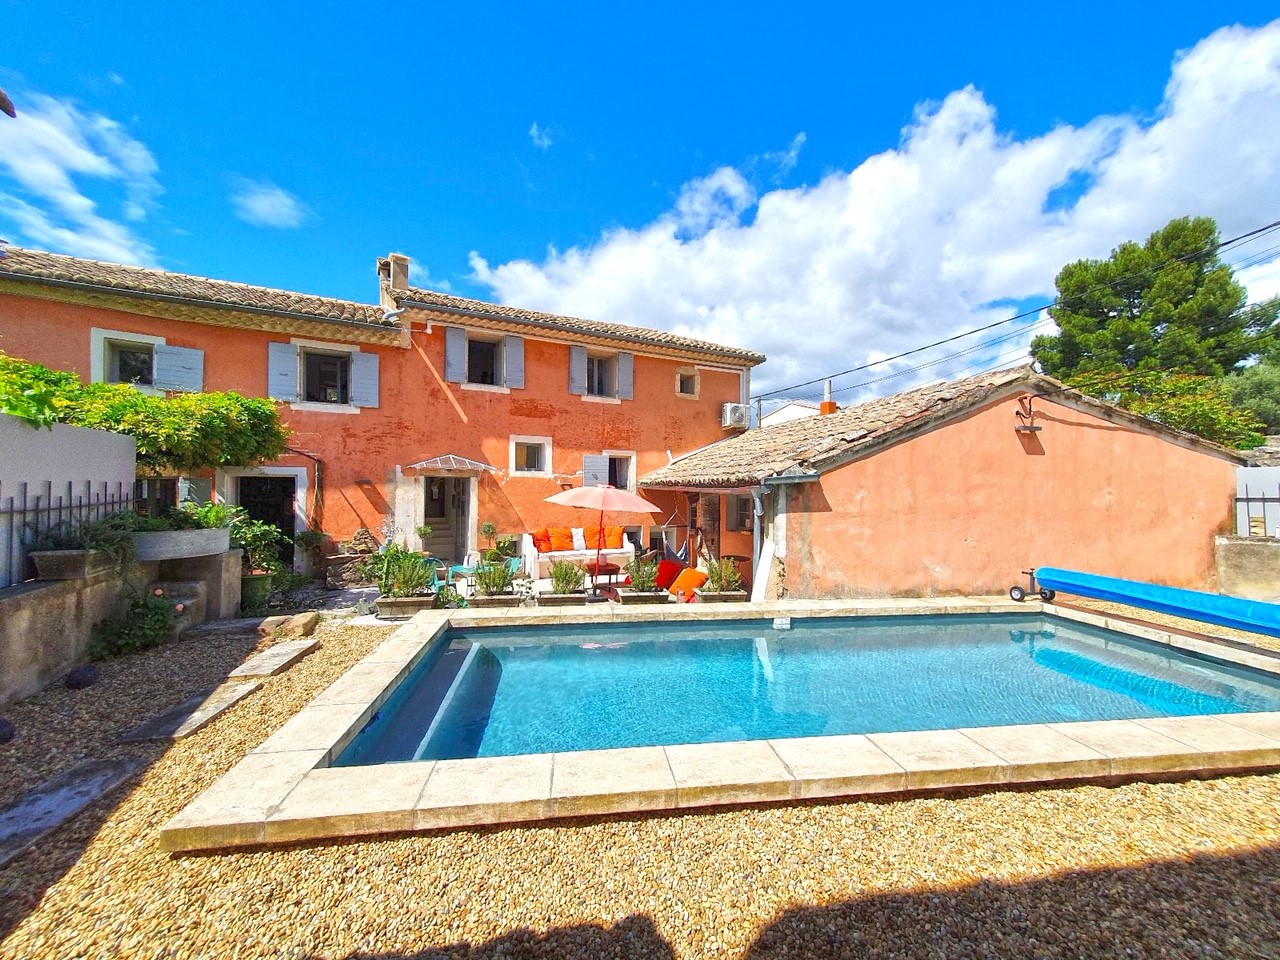 Location au pied du Luberon, charmante maison de 3 chambres avec piscine